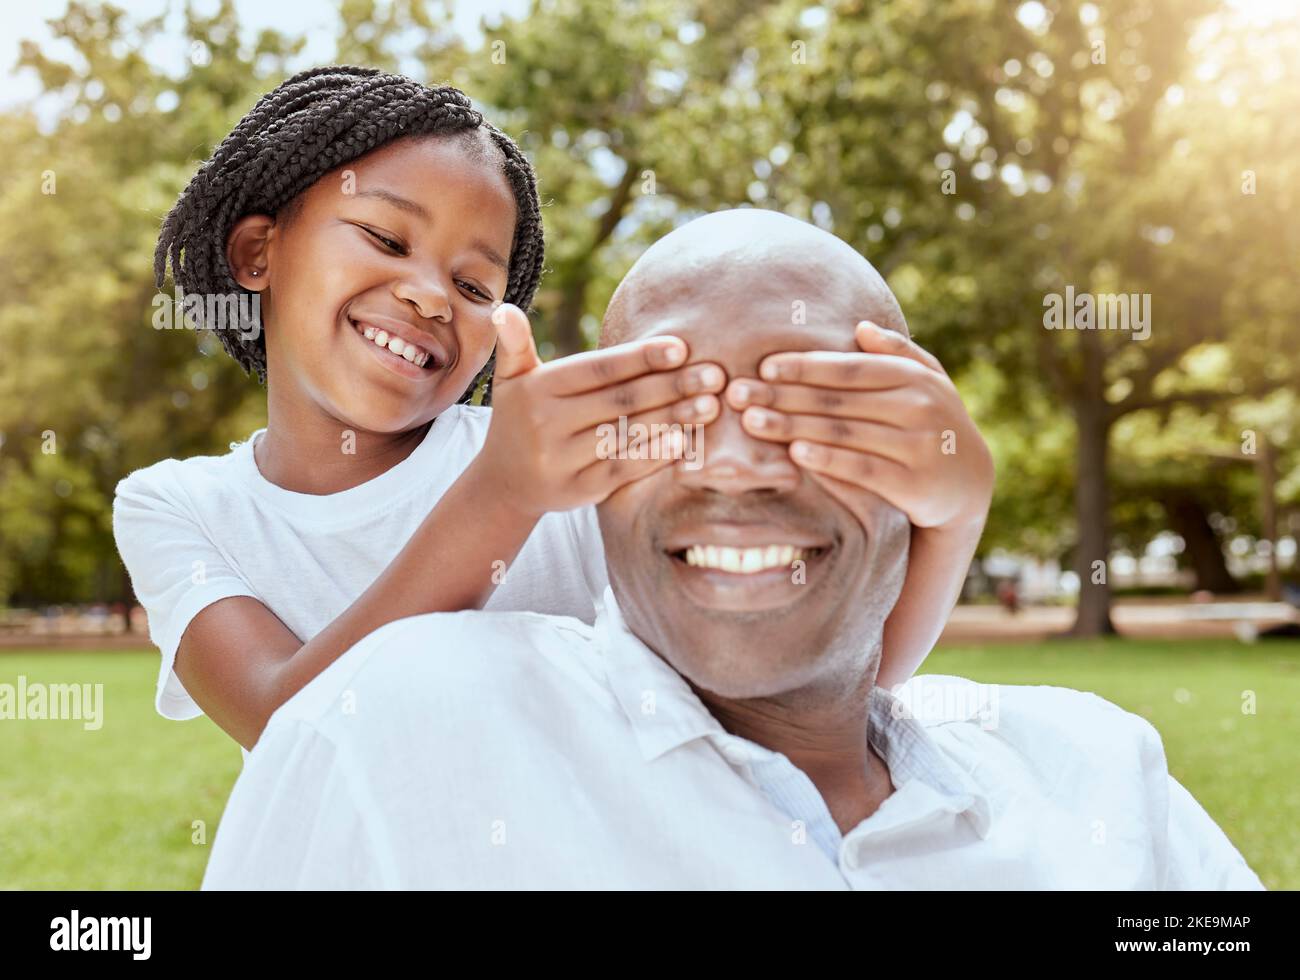 Park, Überraschung und Mädchen mit glücklichen Vater, Hände über die Augen und spielen beim Picknick im Garten. Natur, Liebe und Familie, kleines Kind und schwarzer Mann auf Gras Stockfoto